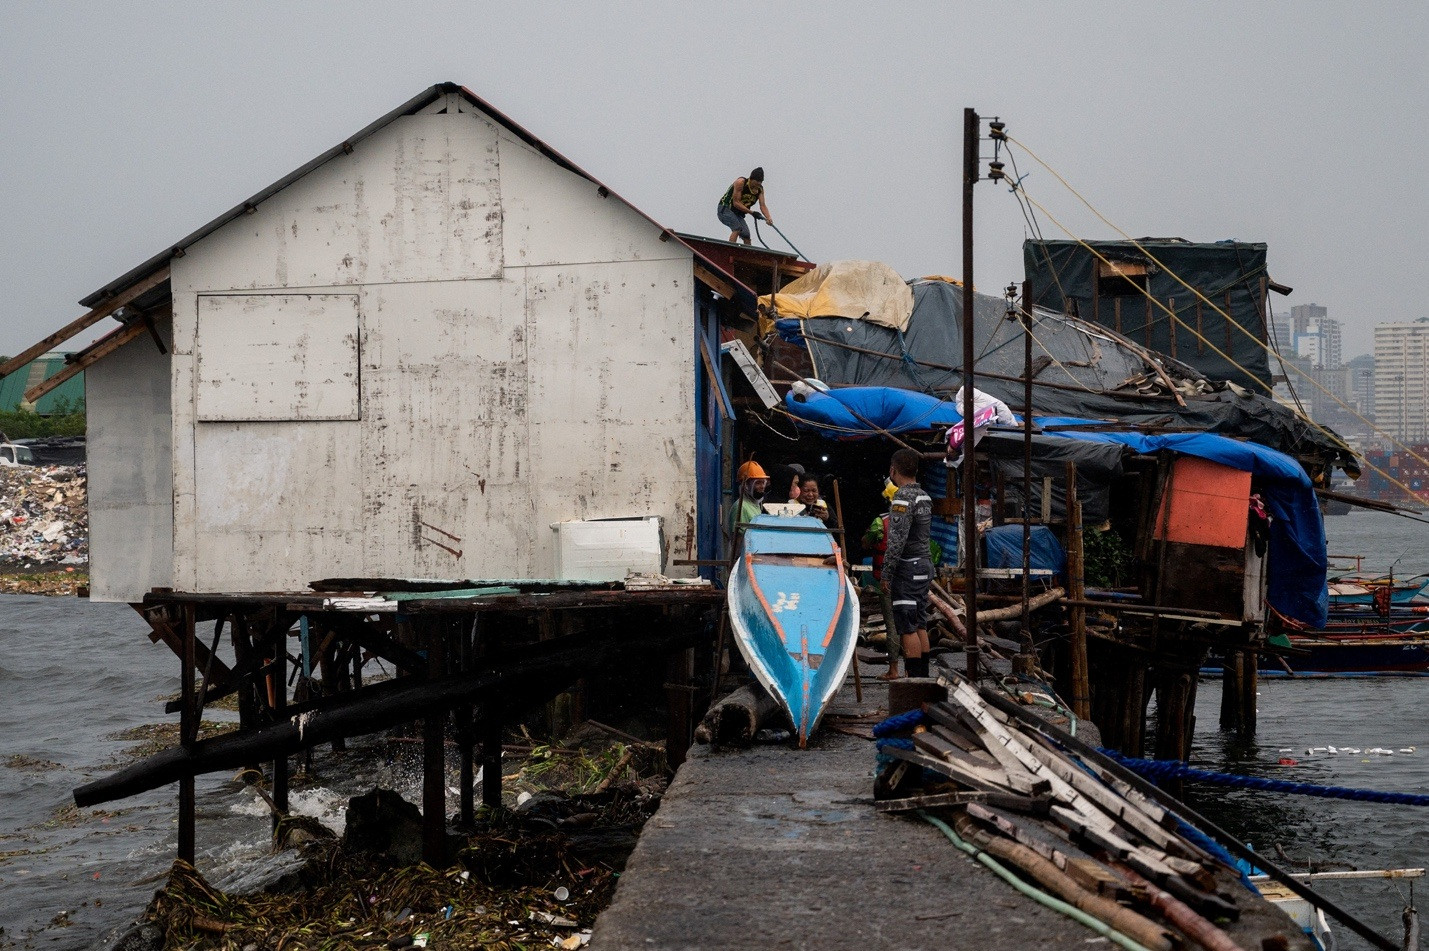 Siêu bão Noru đổ bộ Philippines gây thiệt hại nghiêm trọng - 5